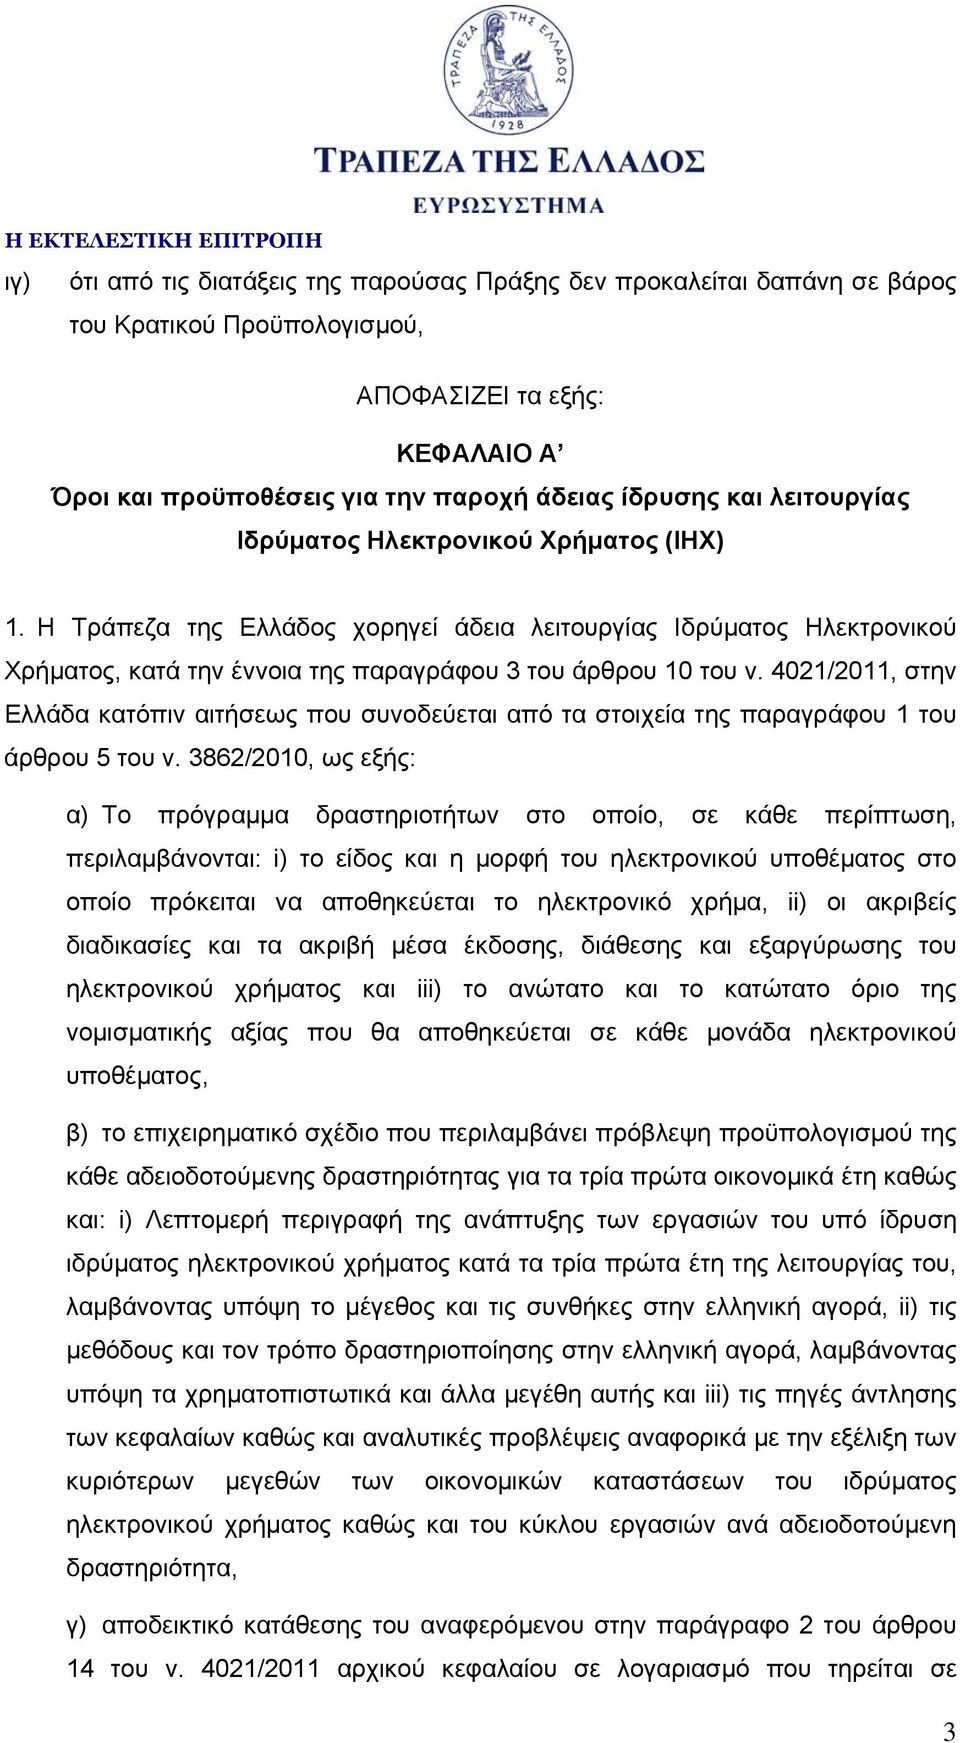 4021/2011, στην Ελλάδα κατόπιν αιτήσεως που συνοδεύεται από τα στοιχεία της παραγράφου 1 του άρθρου 5 του ν.